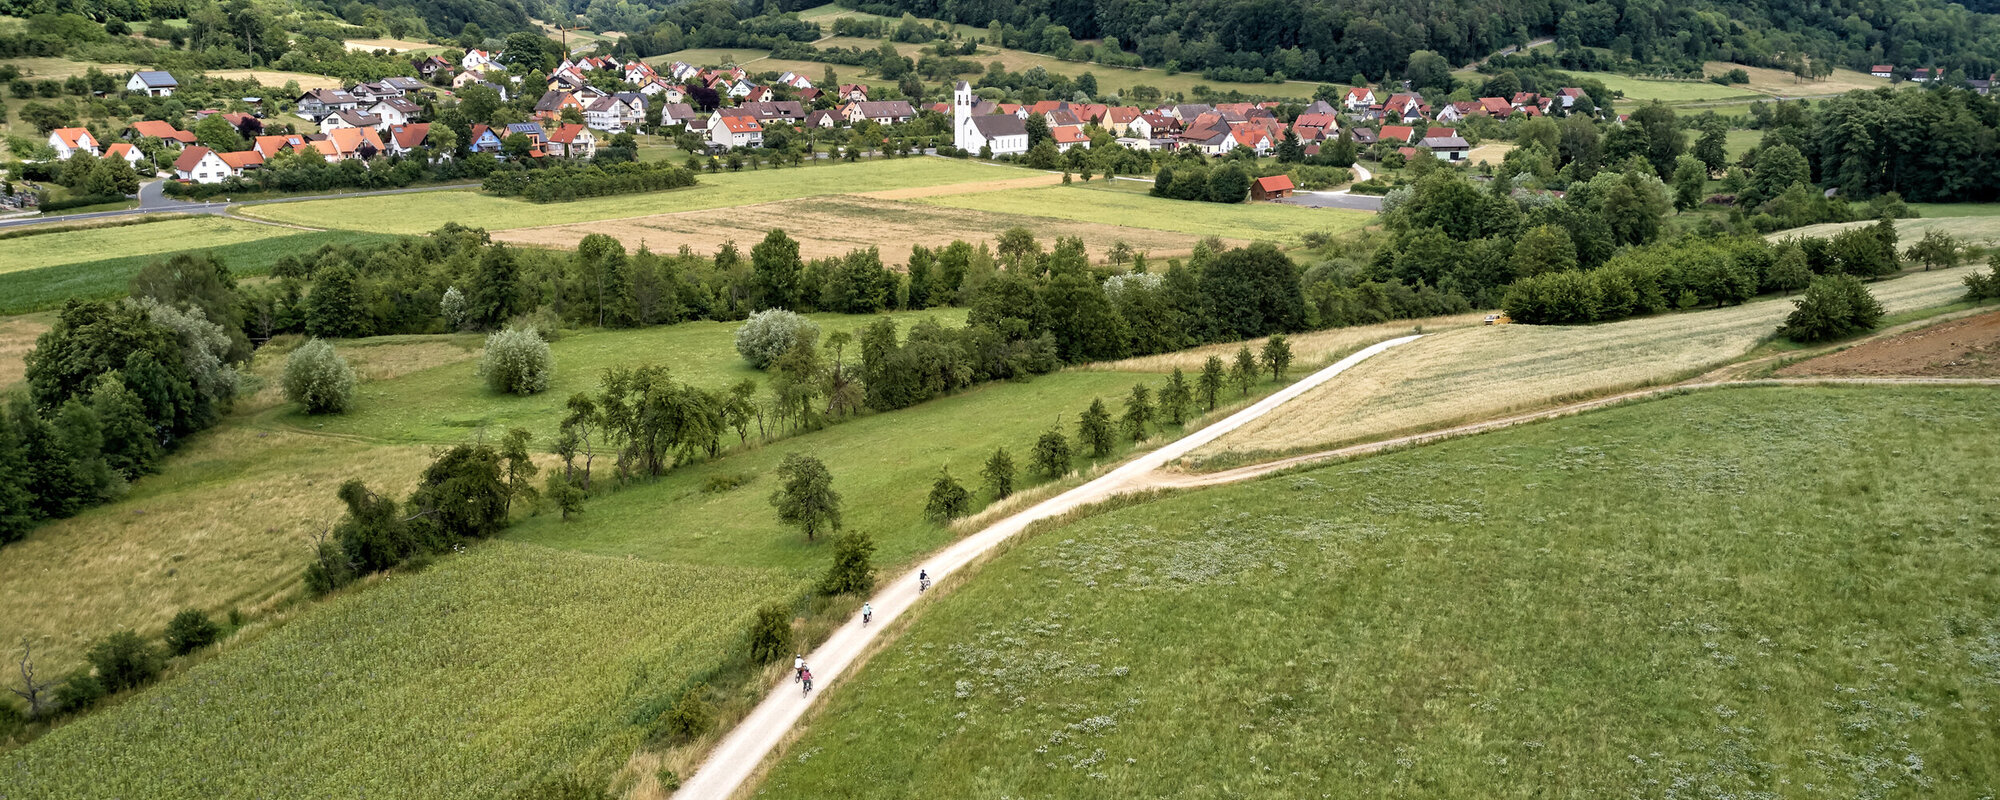 Im Vordergrund fahren vier Radfahrer auf einem Feldweg. Im Hintergrund ist ein Ort in Tallage vor bewaldeten Hügeln zu sehen.